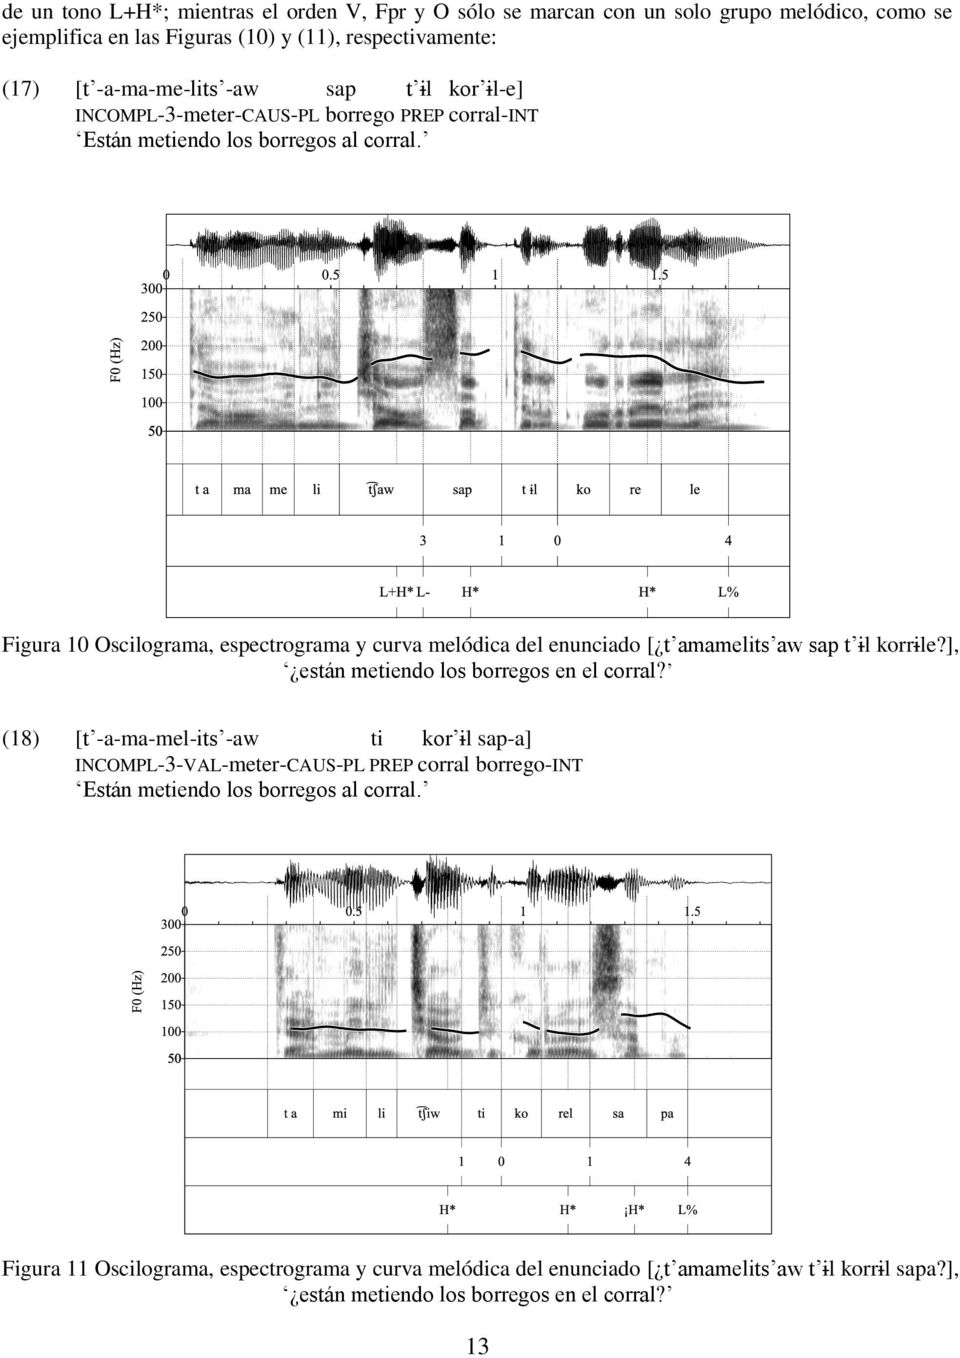 Figura 10 Oscilograma, espectrograma y curva melódica del enunciado [ t amamelits aw sap t il korrile?], están metiendo los borregos en el corral?